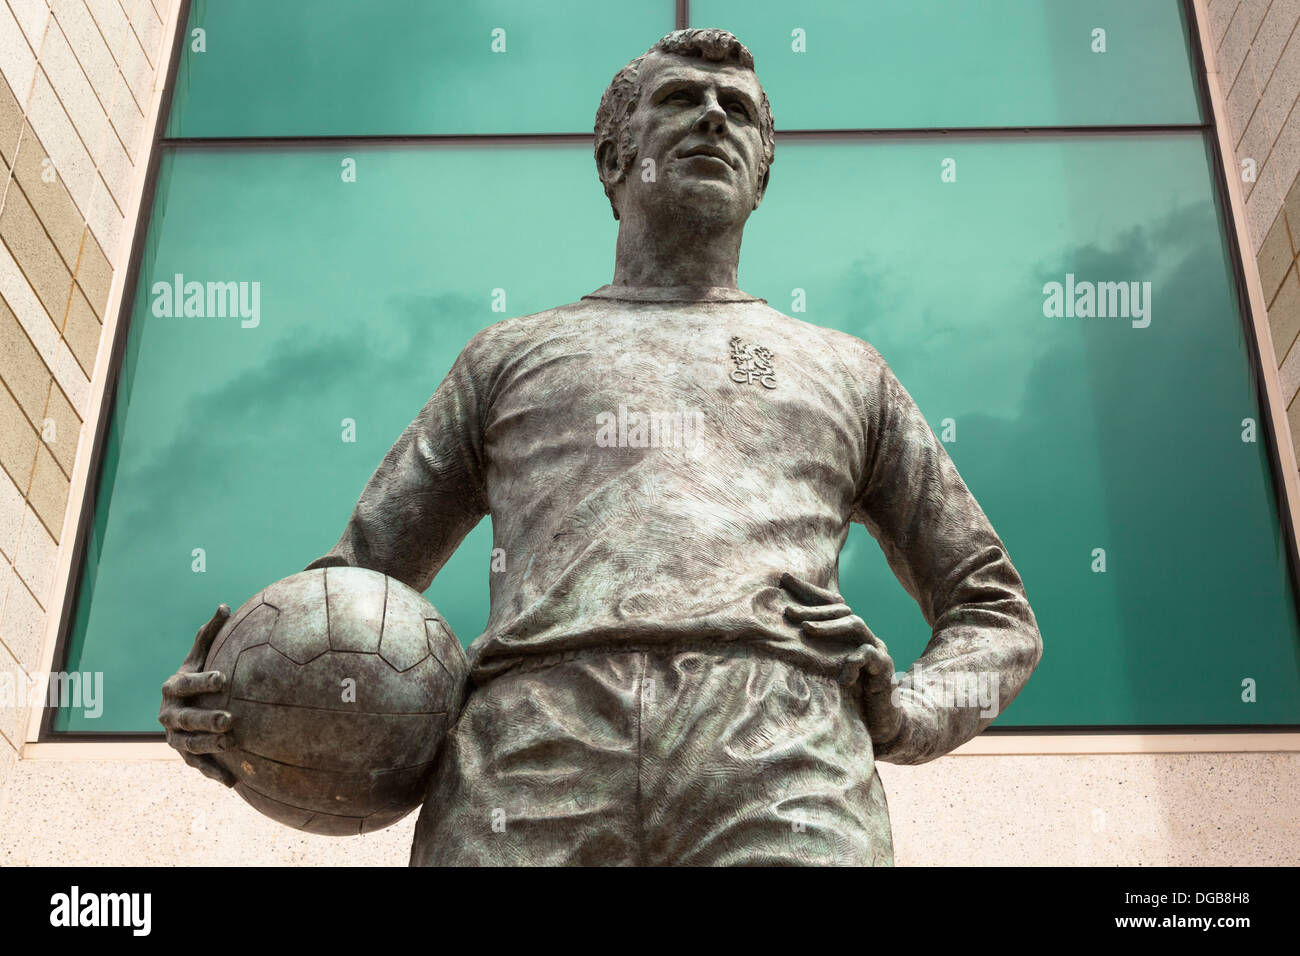 Statue de Peter Osgood à l'extérieur de la tribune ouest at Chelsea Football Club, Stamford Bridge, Chelsea, Londres, Angleterre Banque D'Images